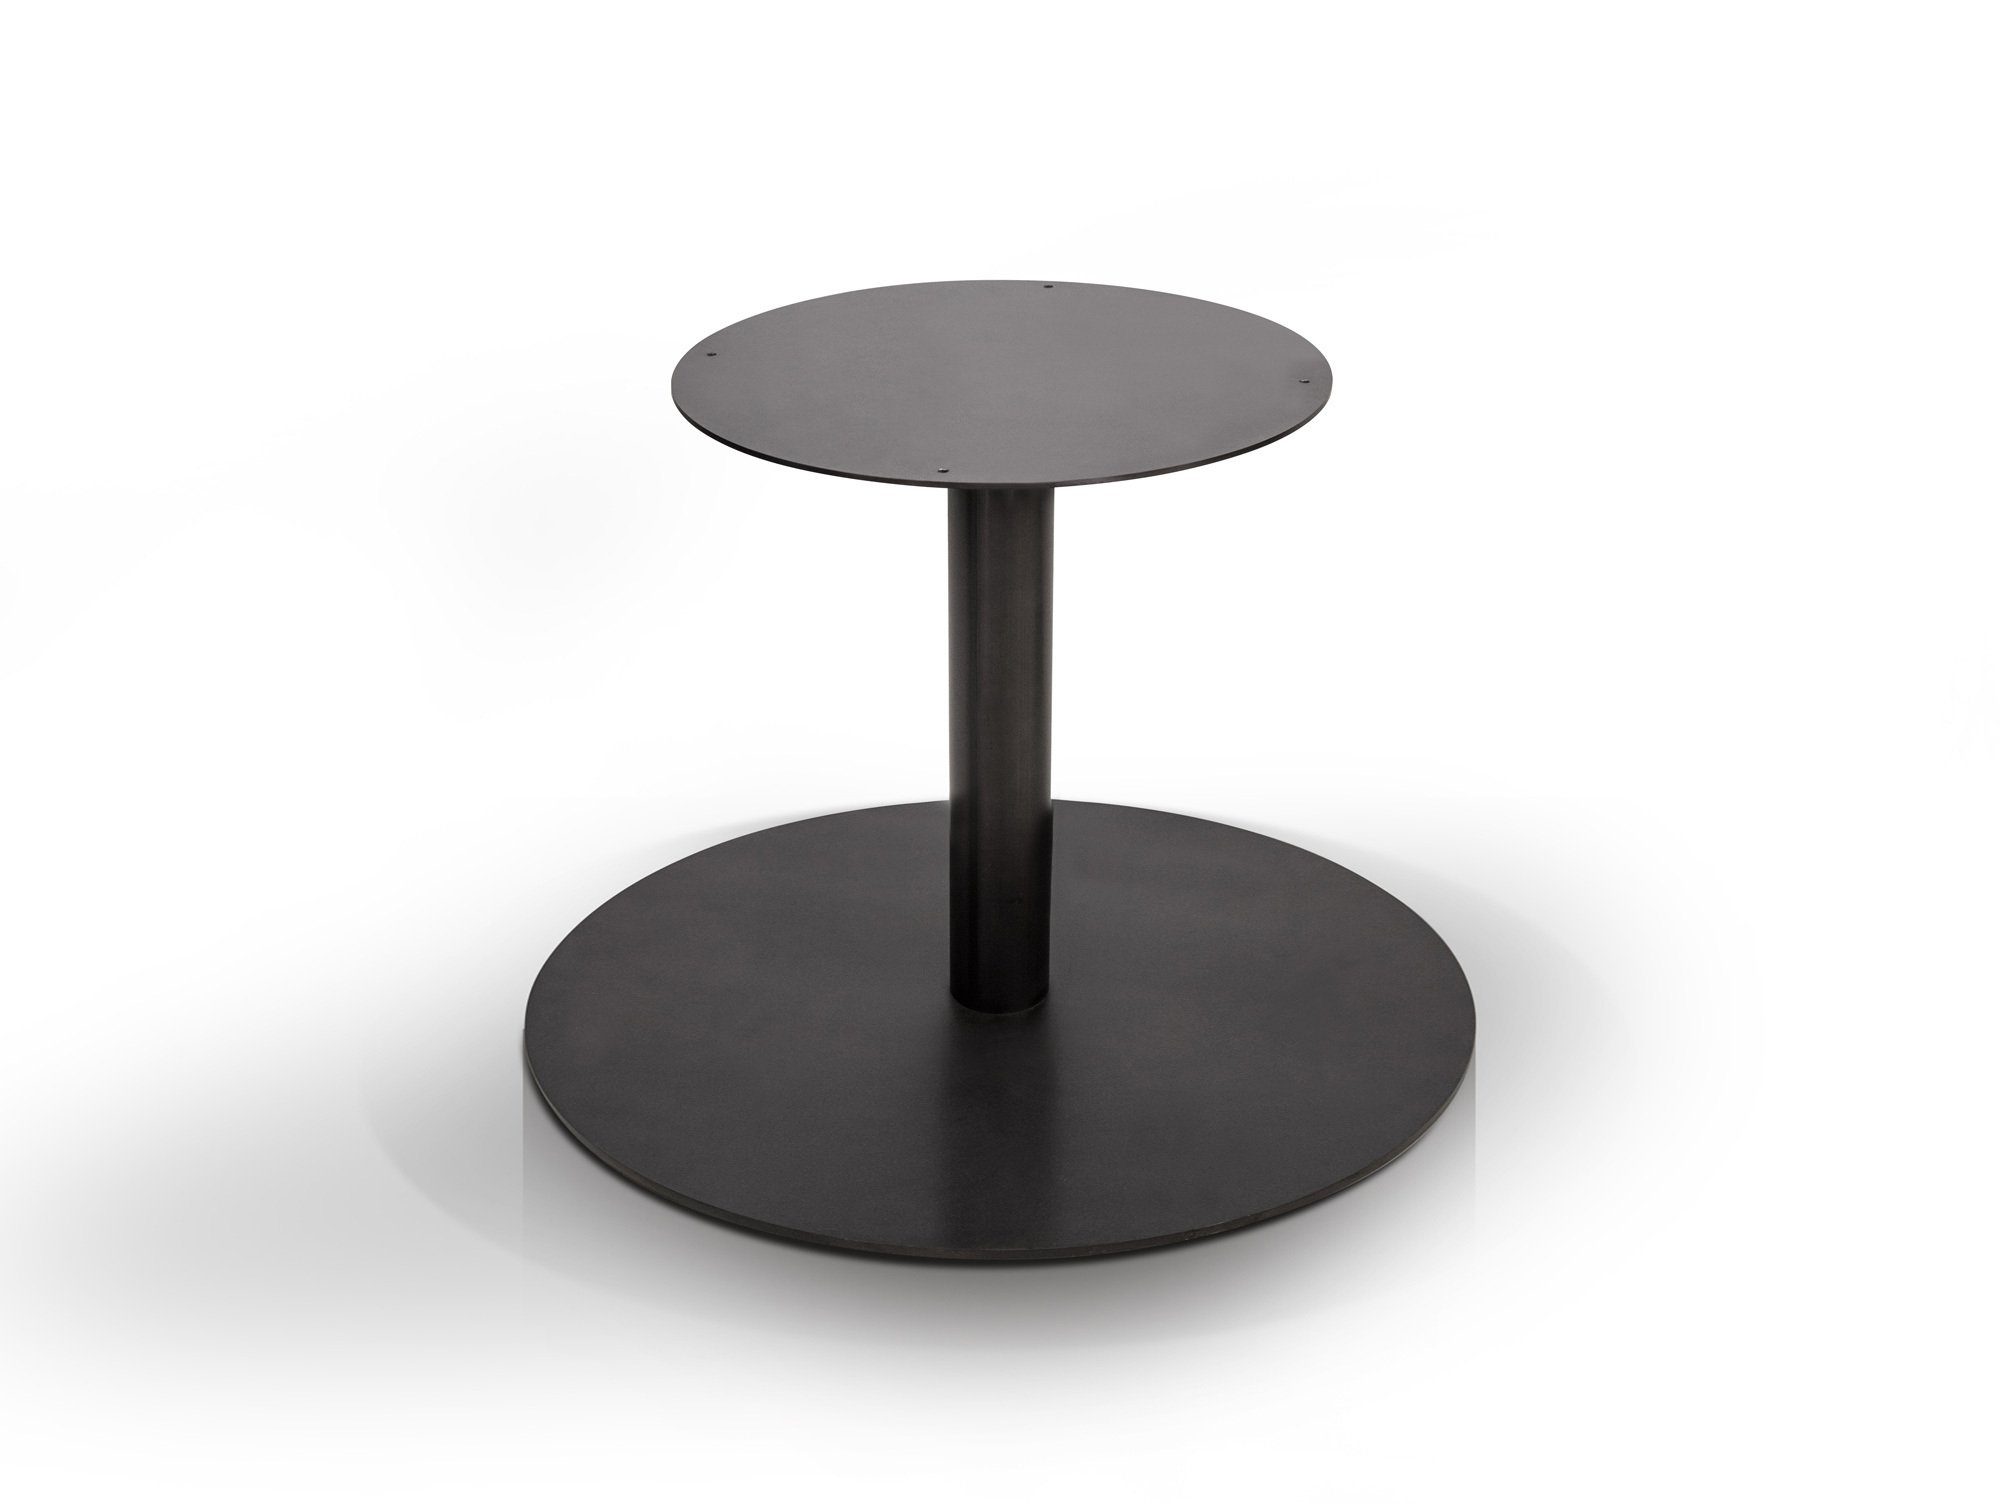 Moebel-Eins Tischgestell, Tischgestell für GASTRO Esstisch rund, Material Stahl, schwarz